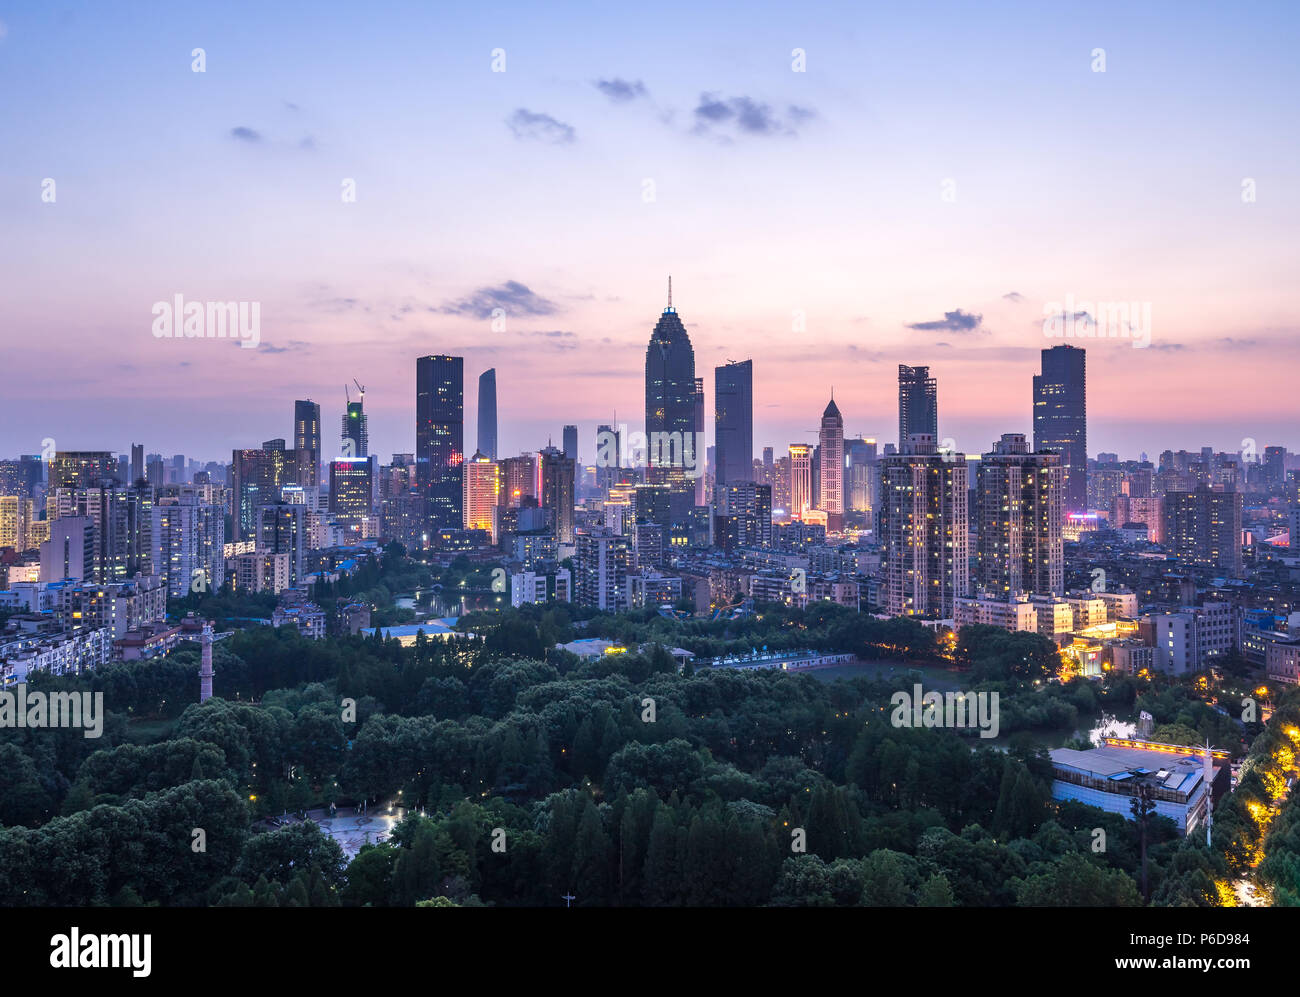 Paysage urbain de la ville de Wuhan la nuit.vue panoramique sur les gratte-ciel et les bâtiments du quartier financier. Banque D'Images